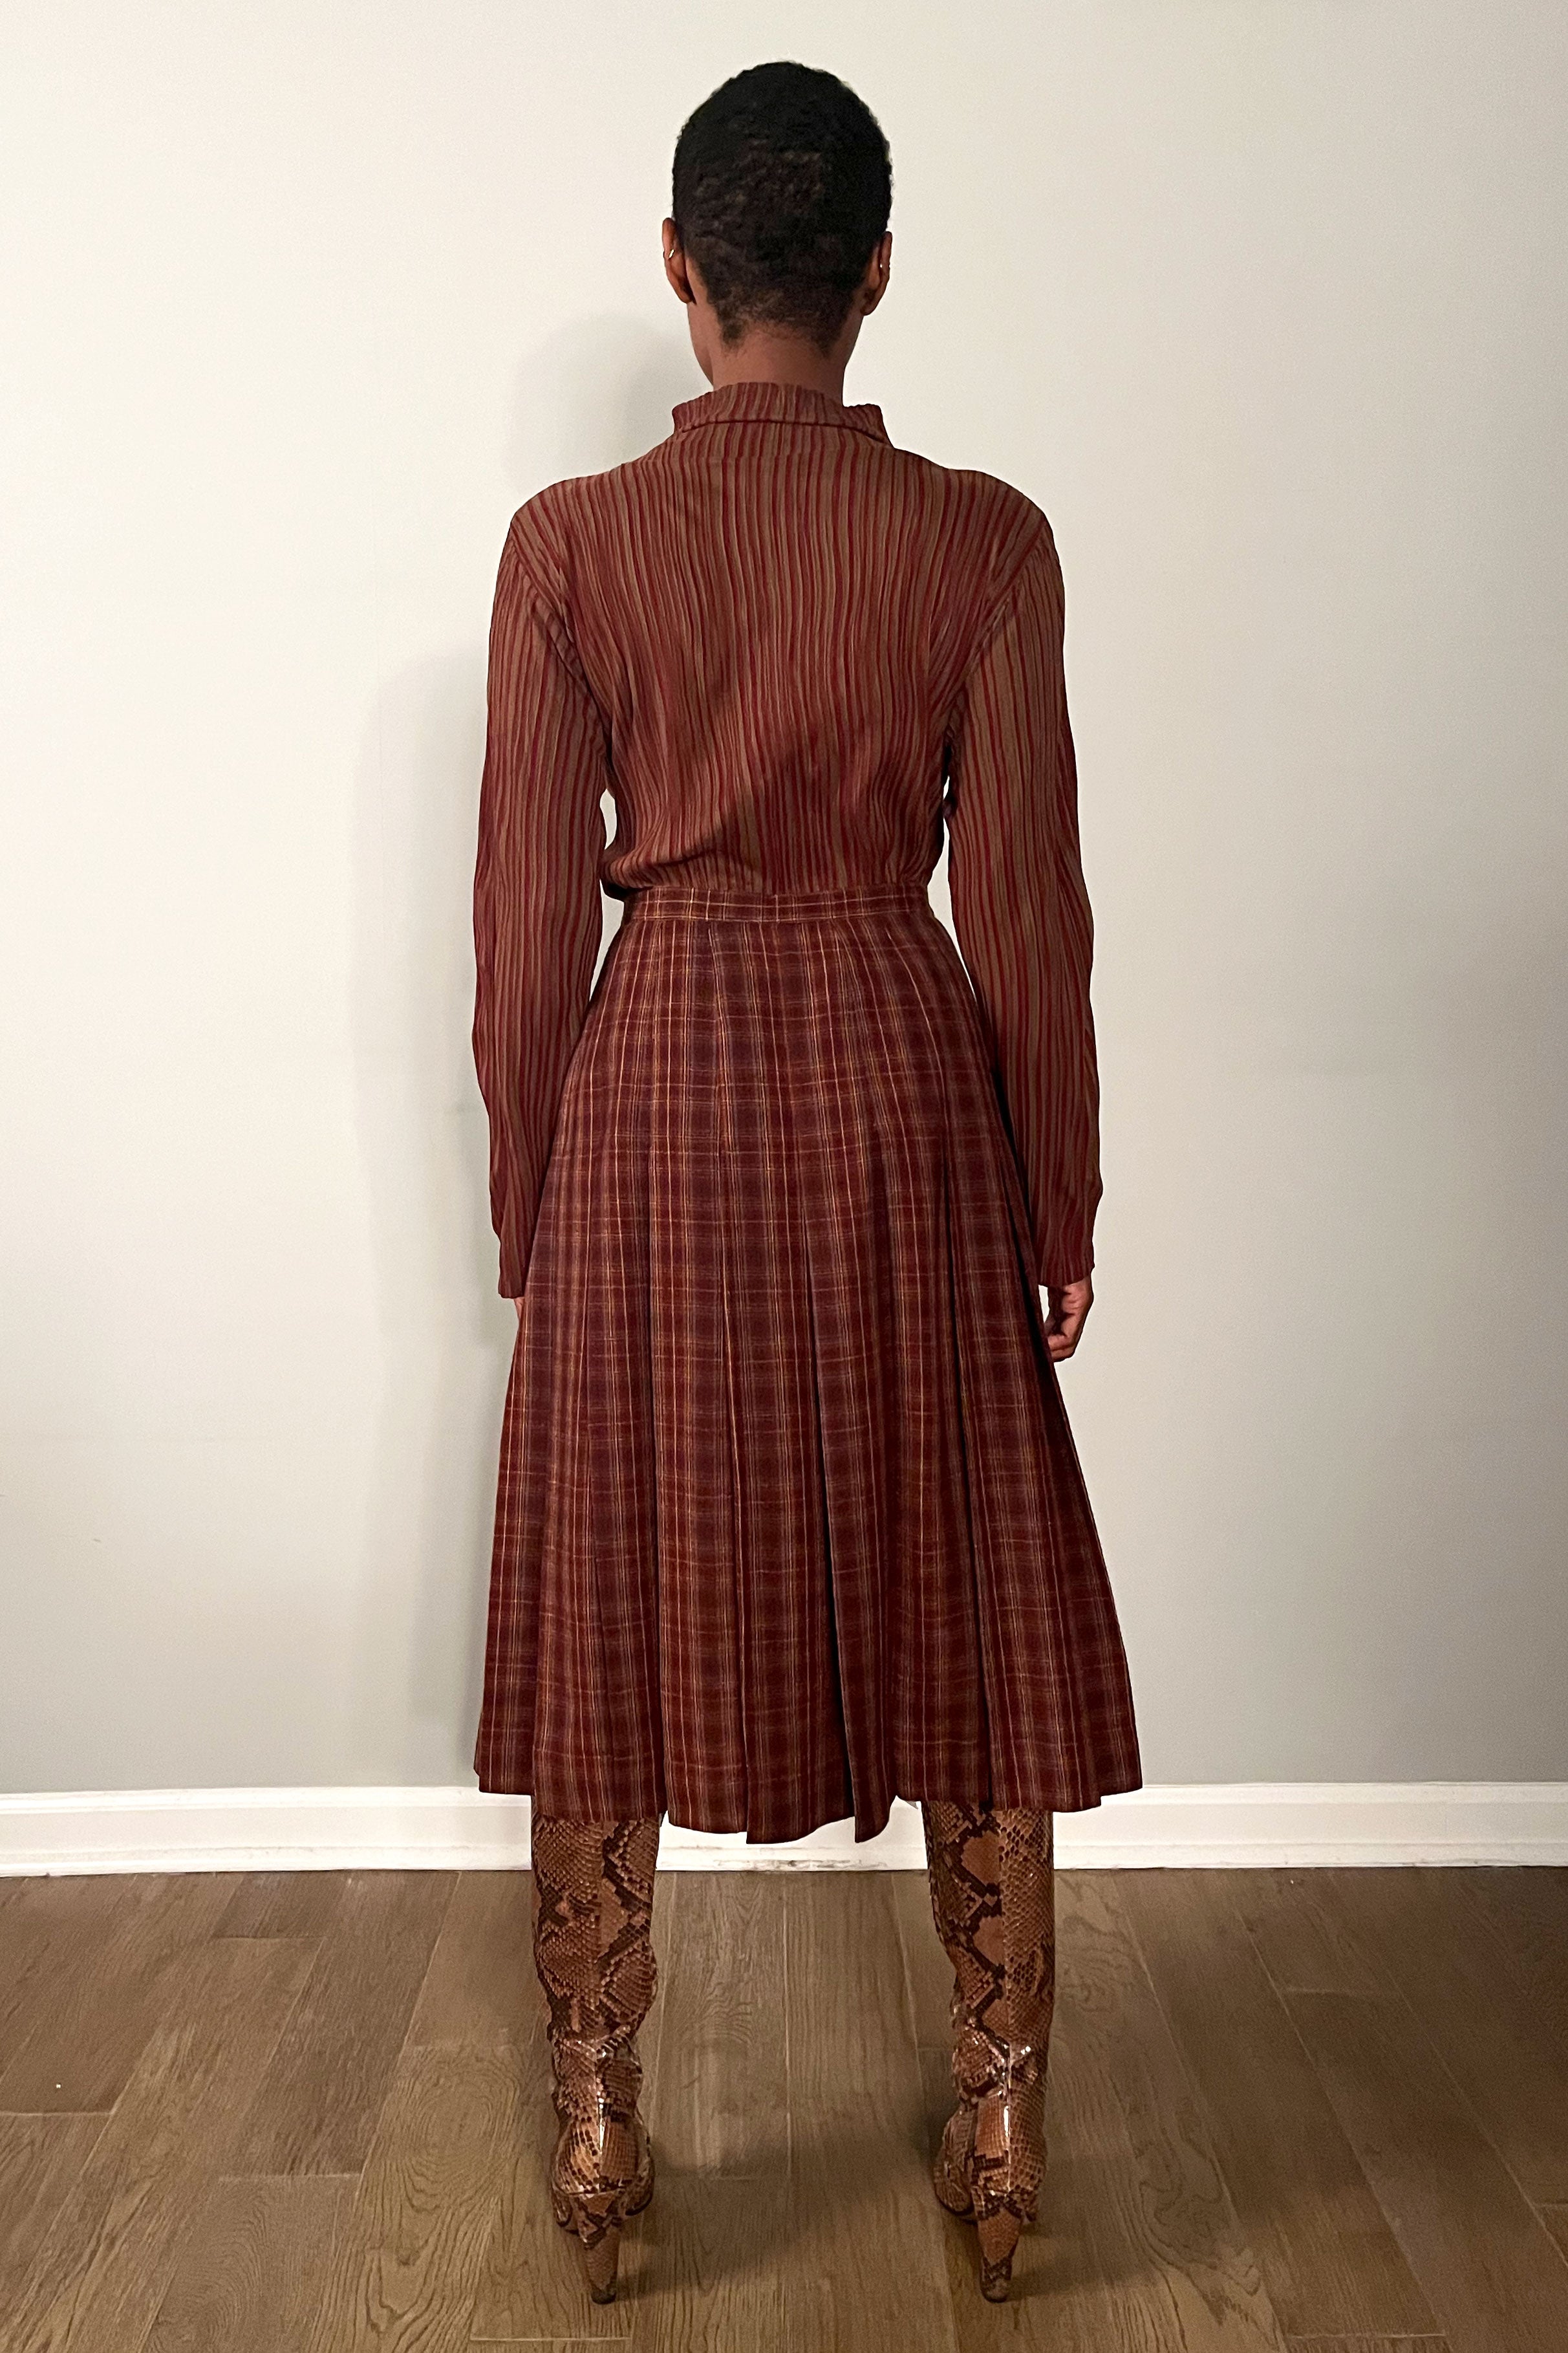 Saint Laurent Plaid Wool Skirt